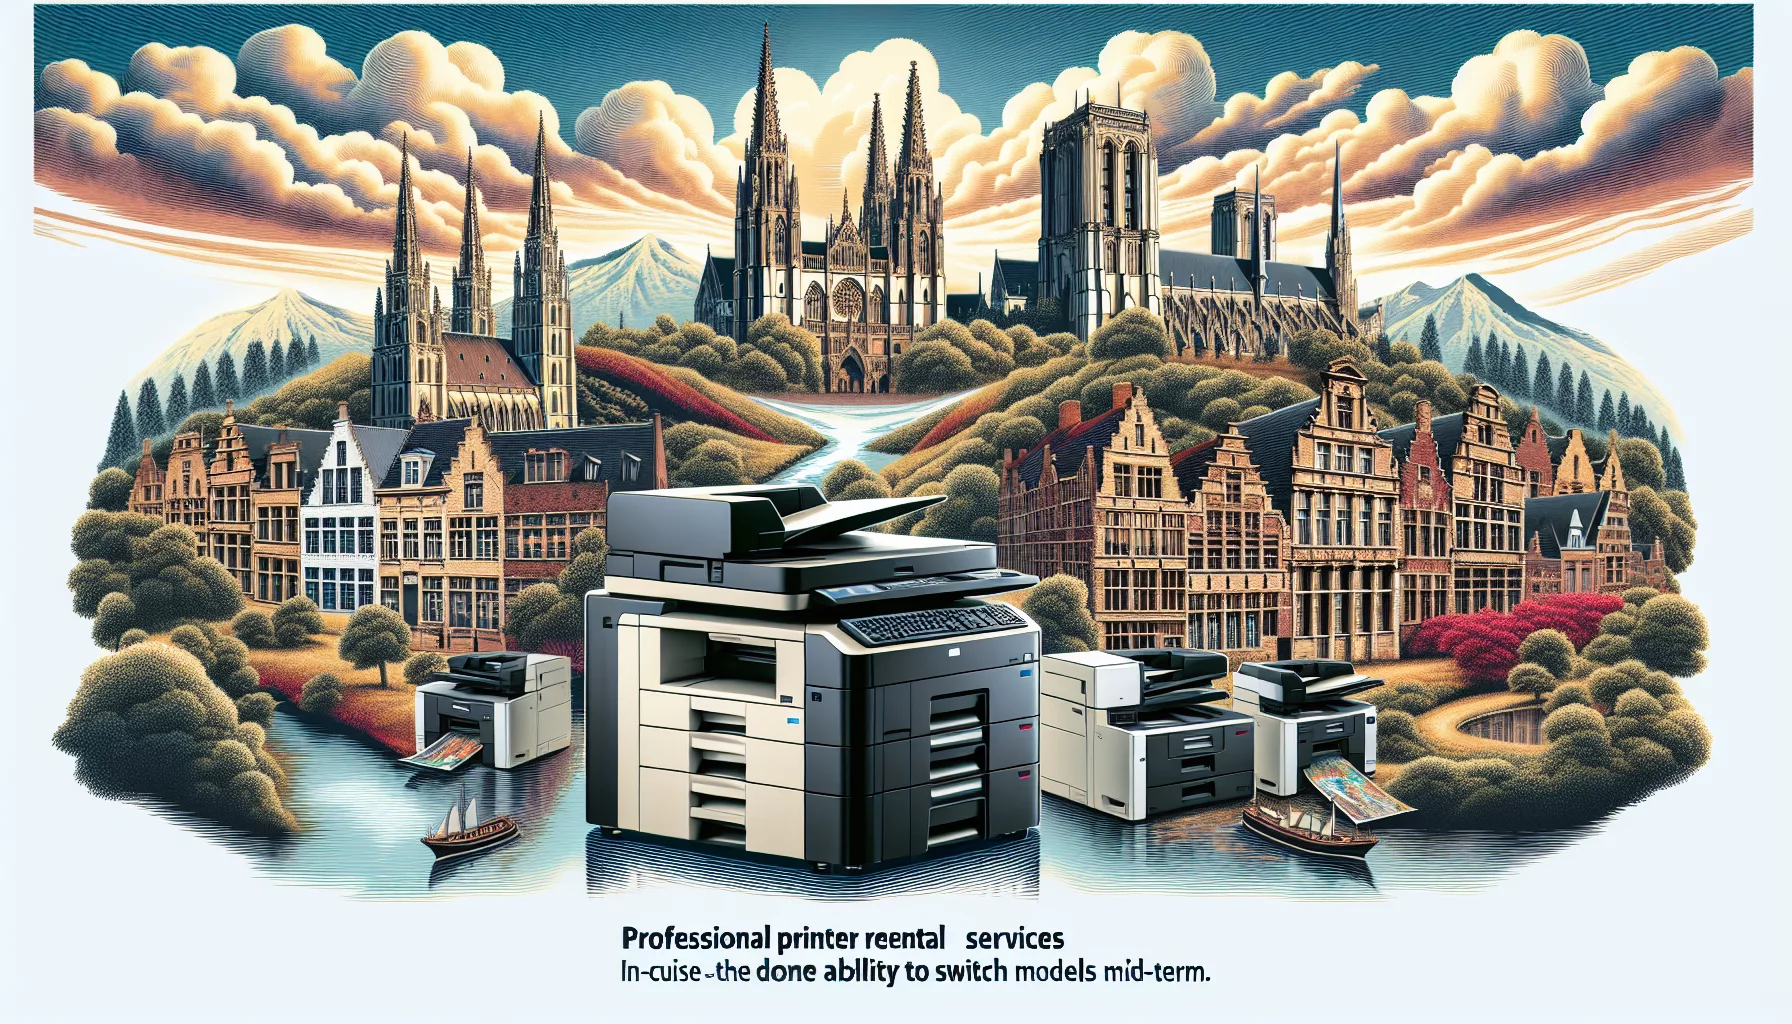 louez une imprimante professionnelle en belgique pour répondre à vos besoins. est-il possible de changer de modèle d'imprimante en cours de location en belgique ? découvrez nos solutions flexibles de location d'imprimantes.